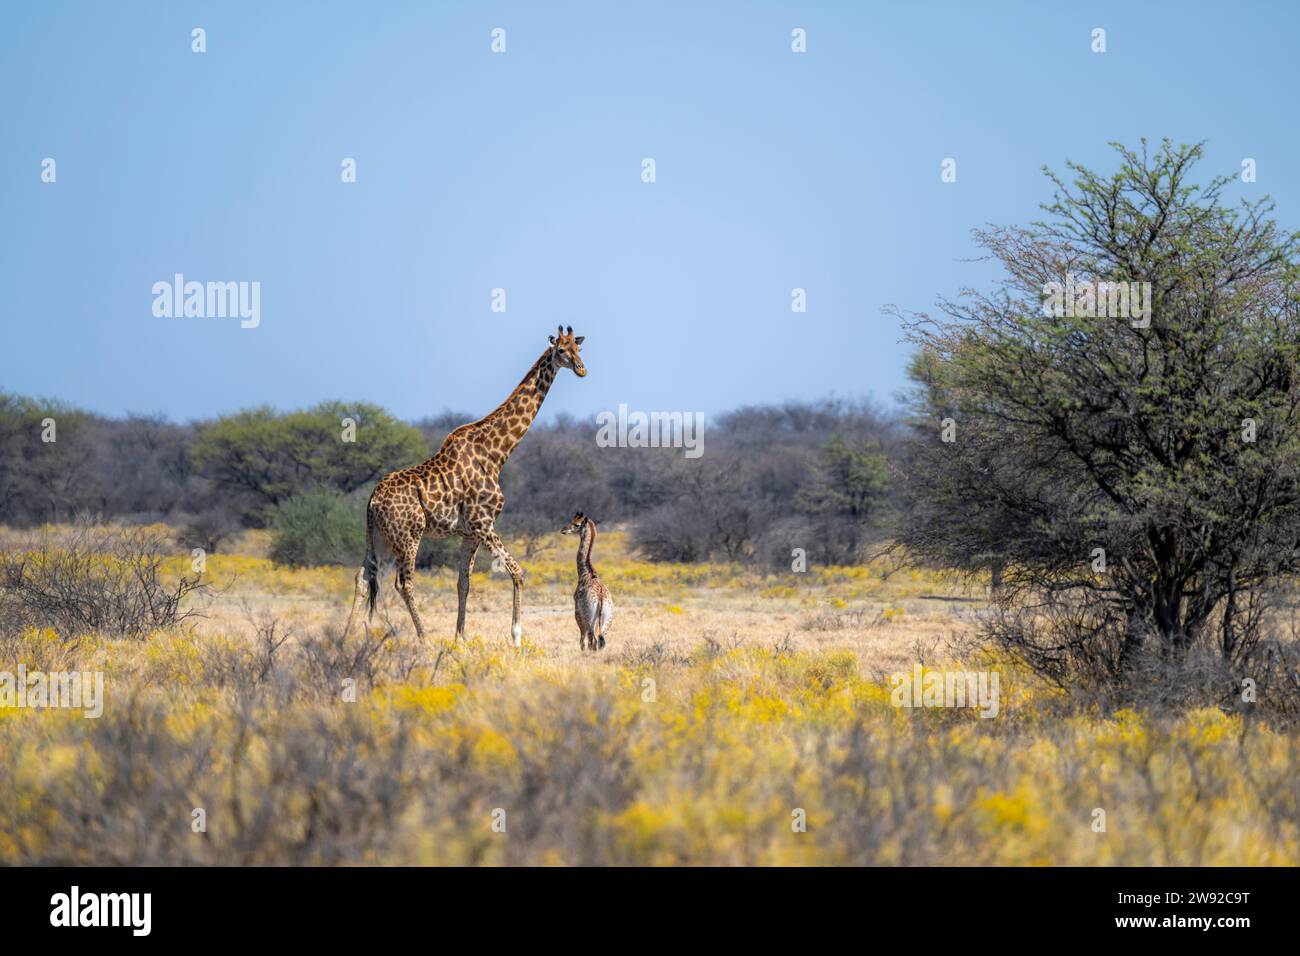 Deux girafes (Giraffa), mère avec des jeunes entre des buissons à fleurs jaunes, Khama Rhino Sanctuary, Botswana Banque D'Images